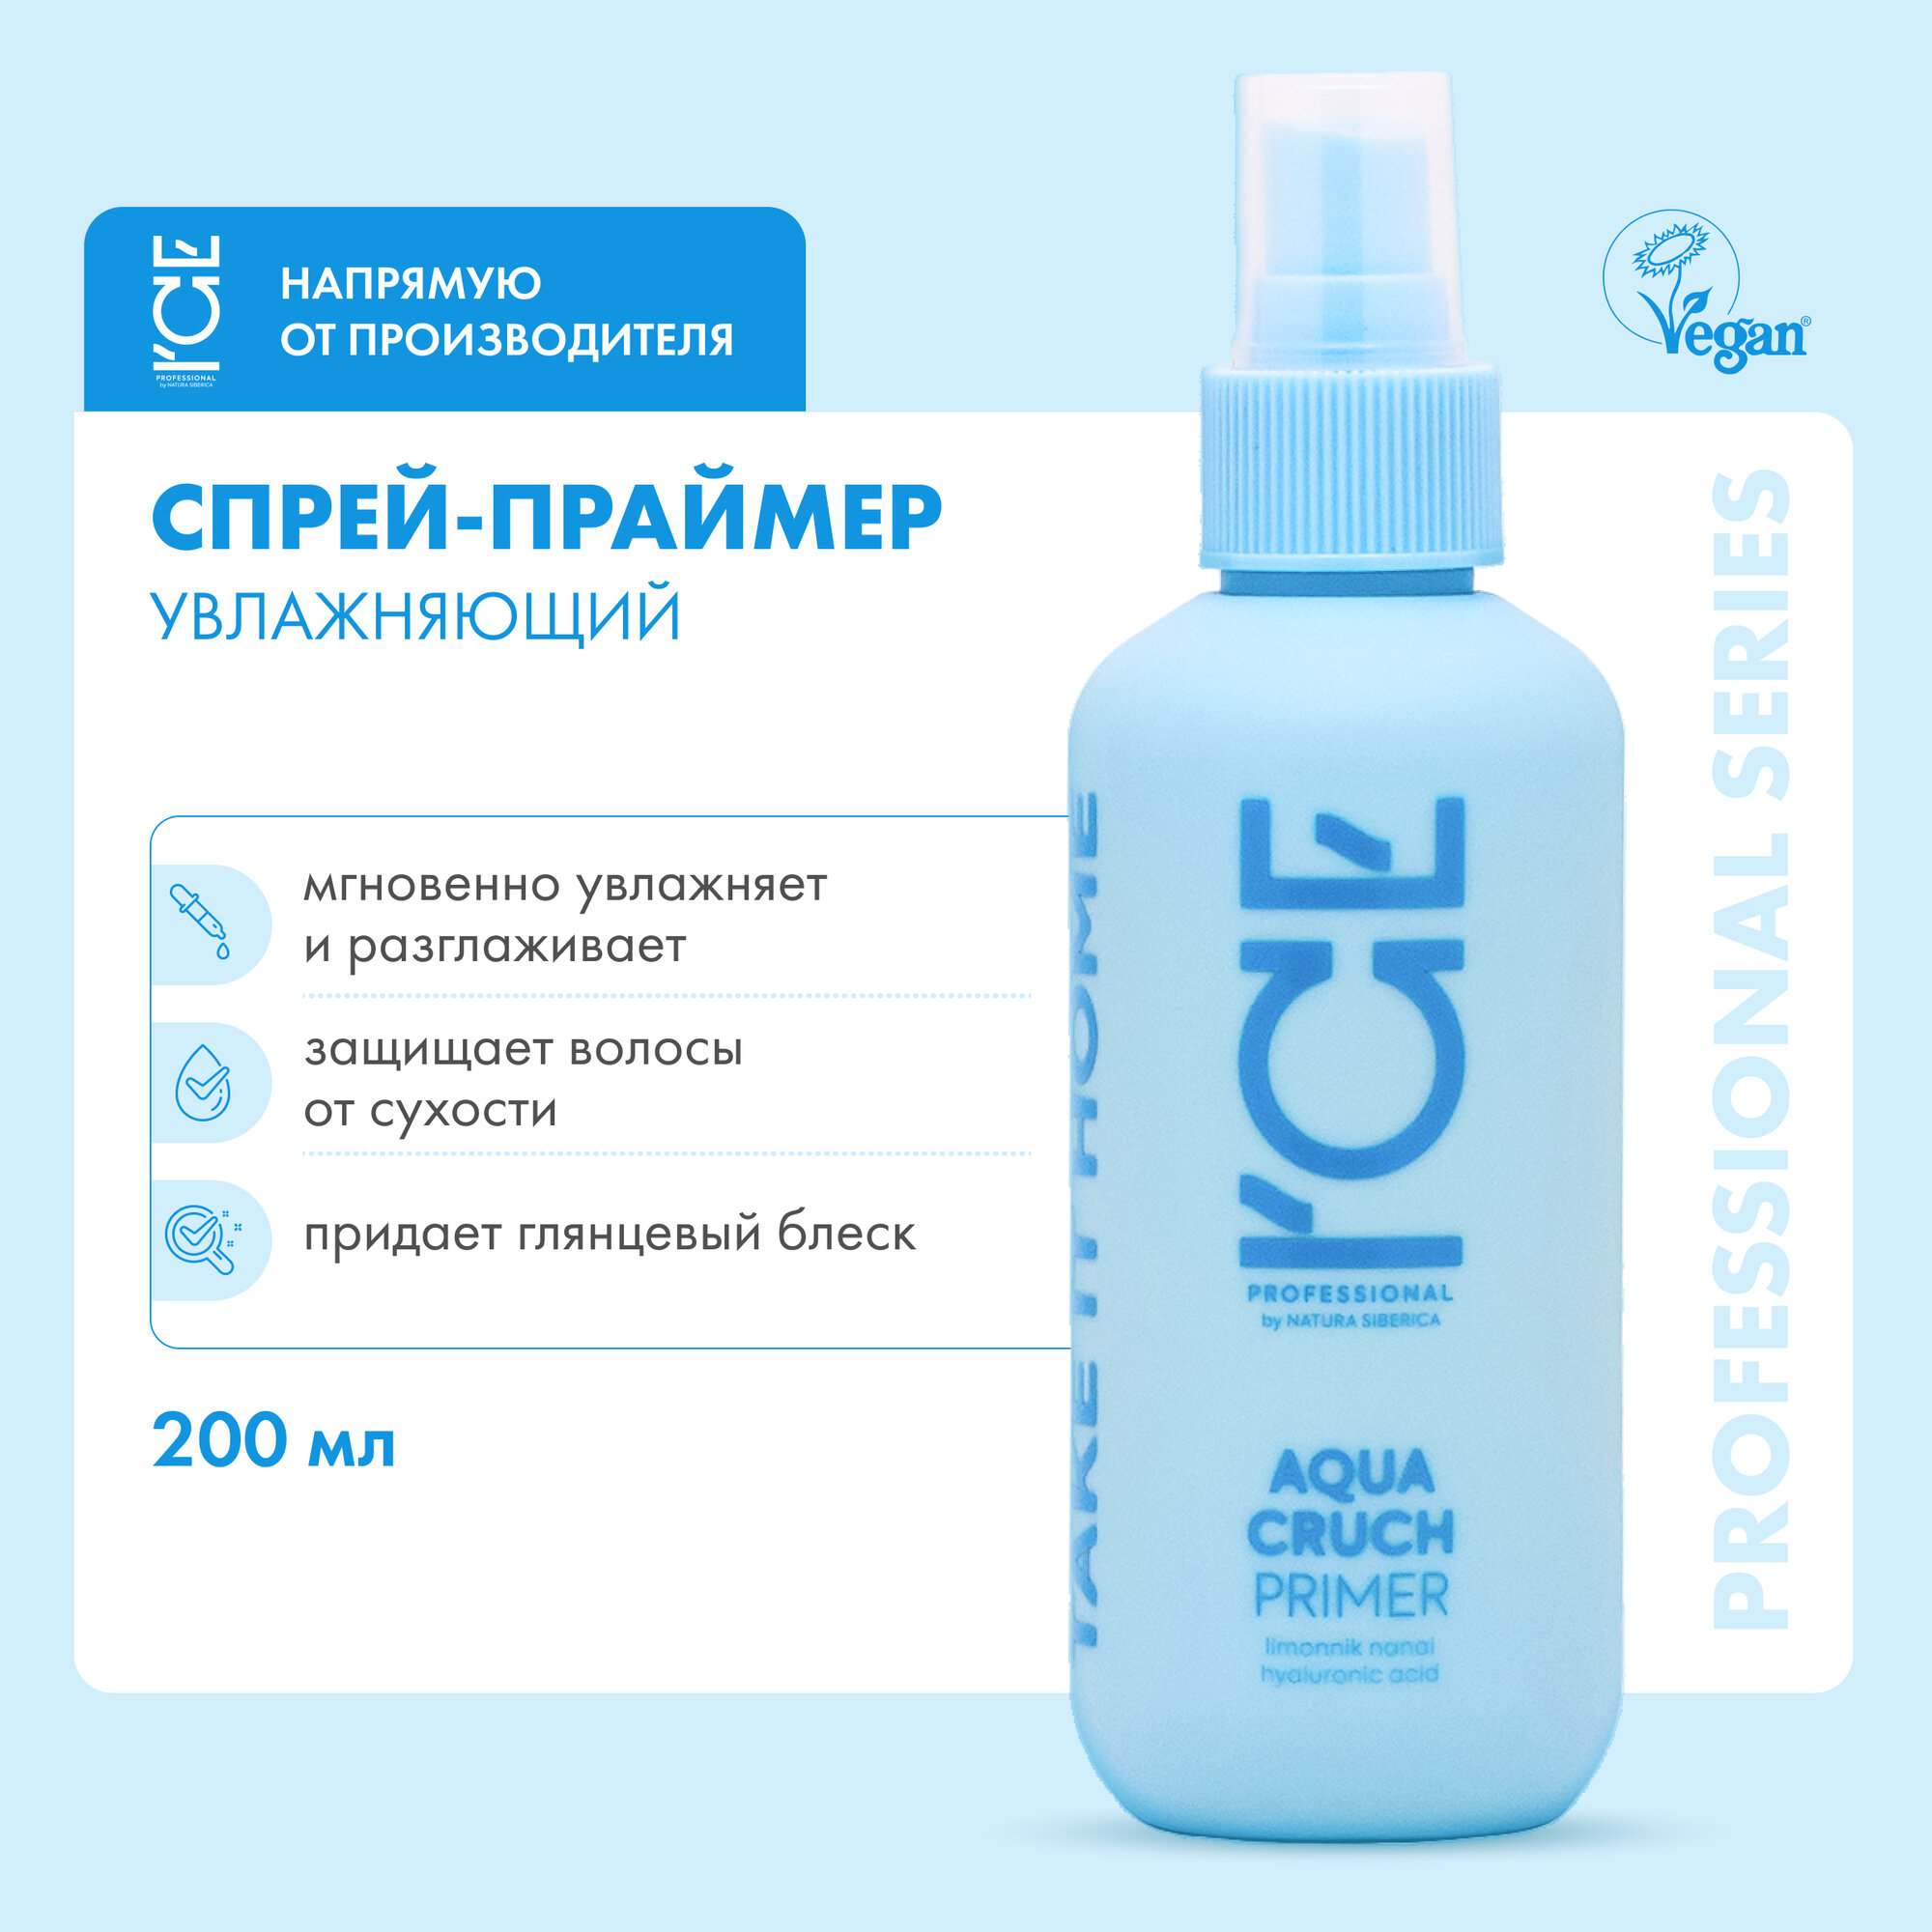 Праймер для волос Aqua Cruch «Увлажняющий» ICE Professional by Natura Siberica, Take It Home, 200 мл